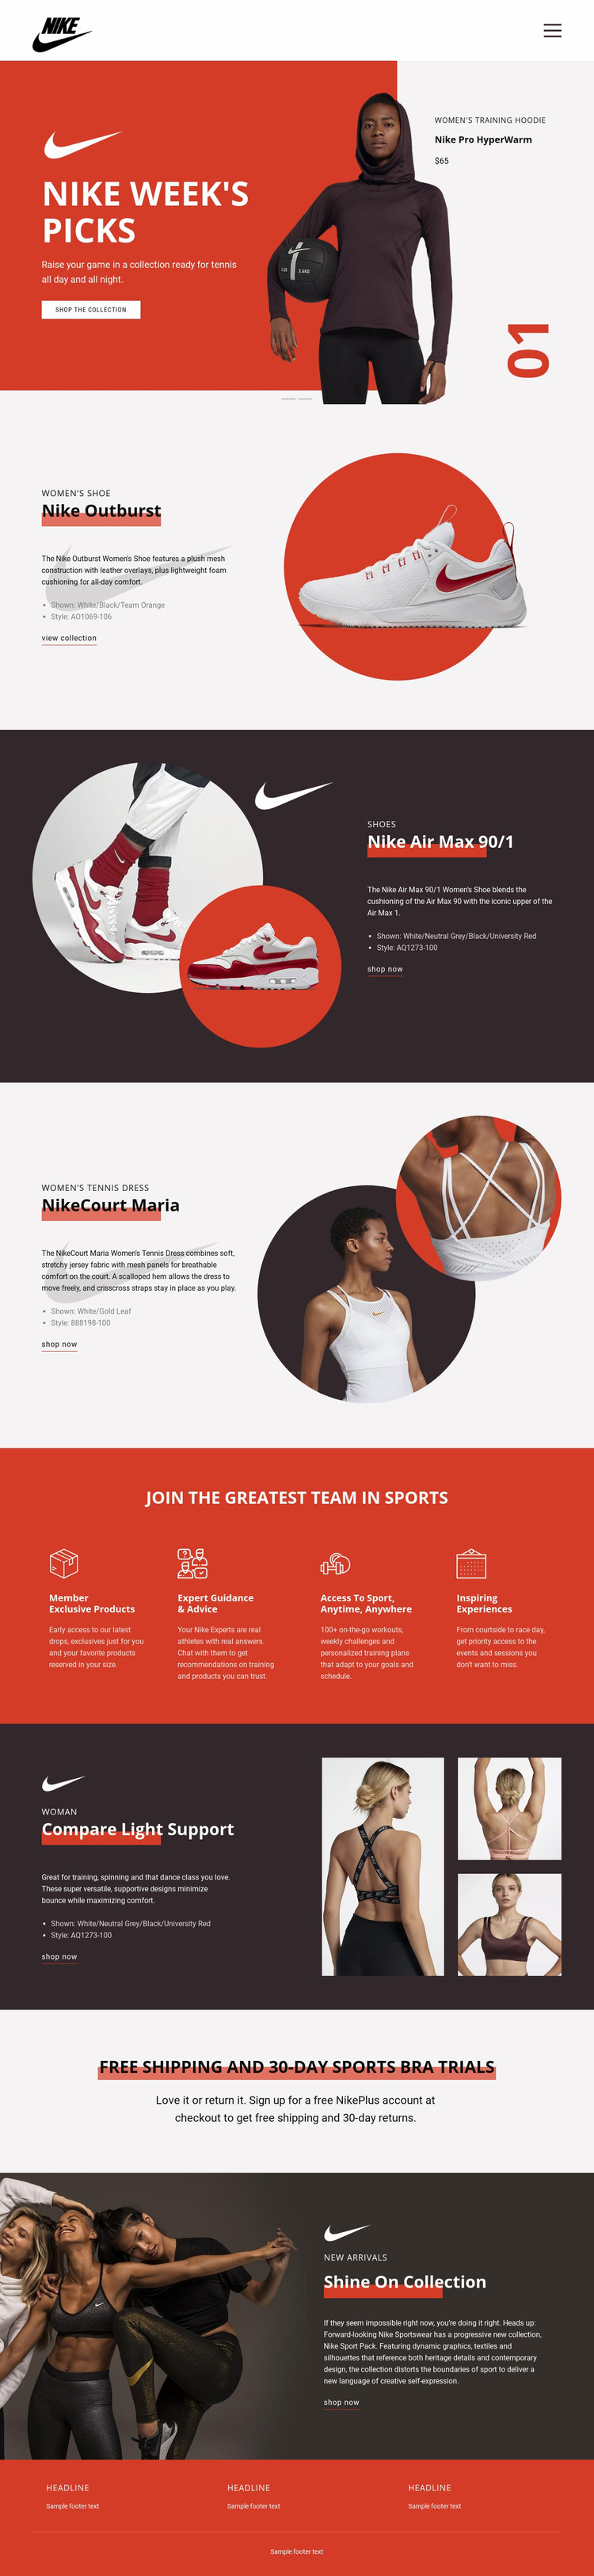 Nike Favorites Web Page Design